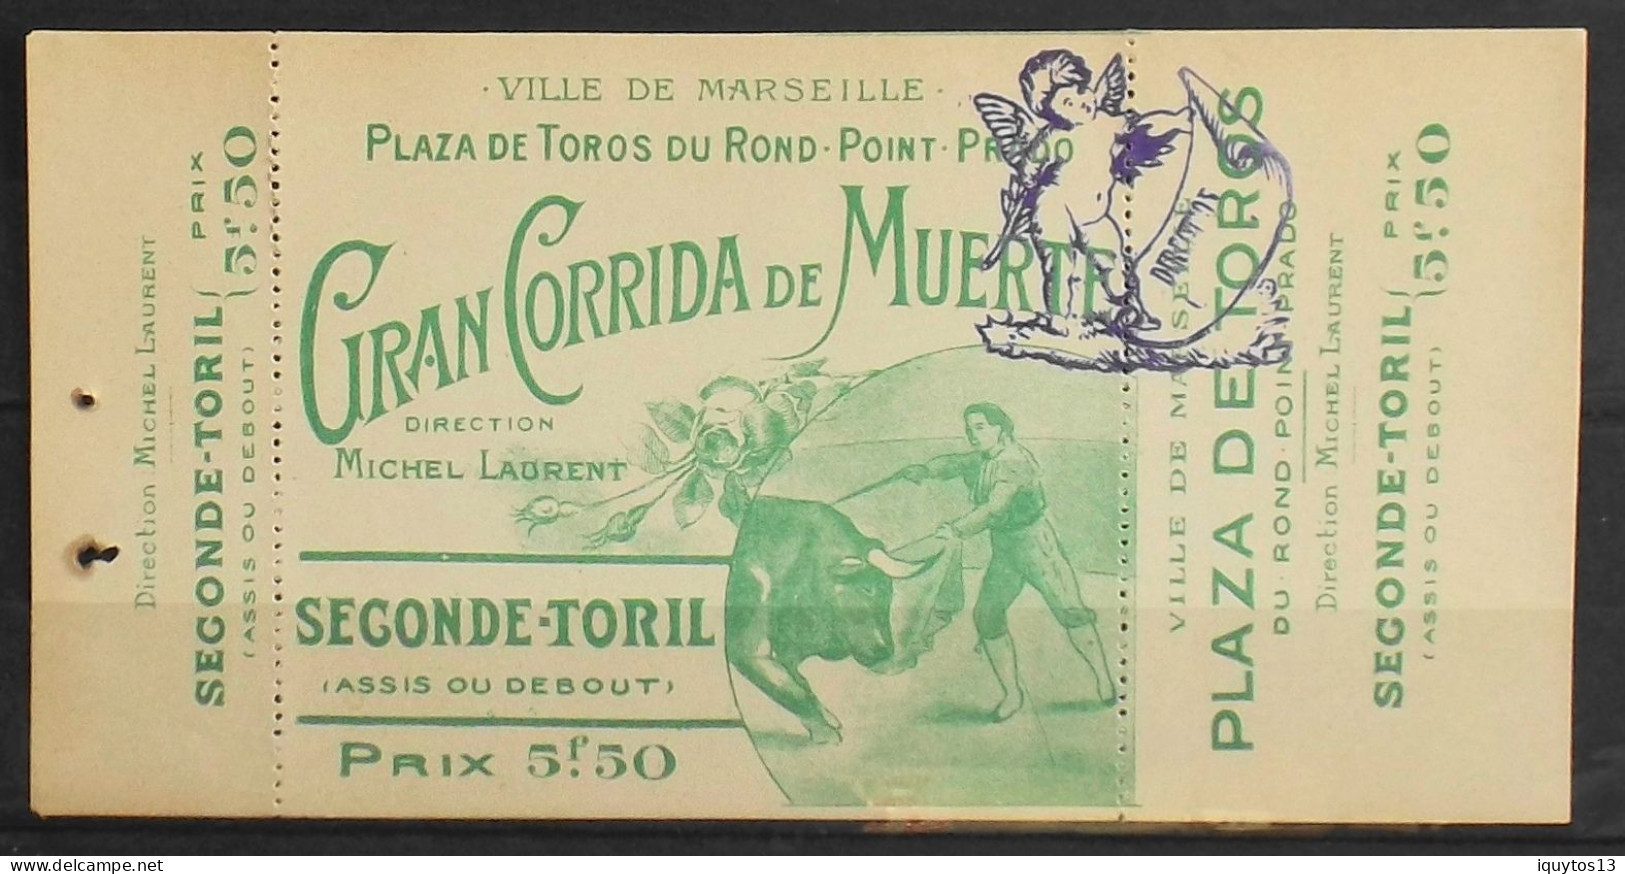 Carte D'Entrée SECONDE -TORIL > Ville De Marseille > Plaza De Toros Du Rond Point Prado - Direction Michel Laurent - TBE - Eintrittskarten